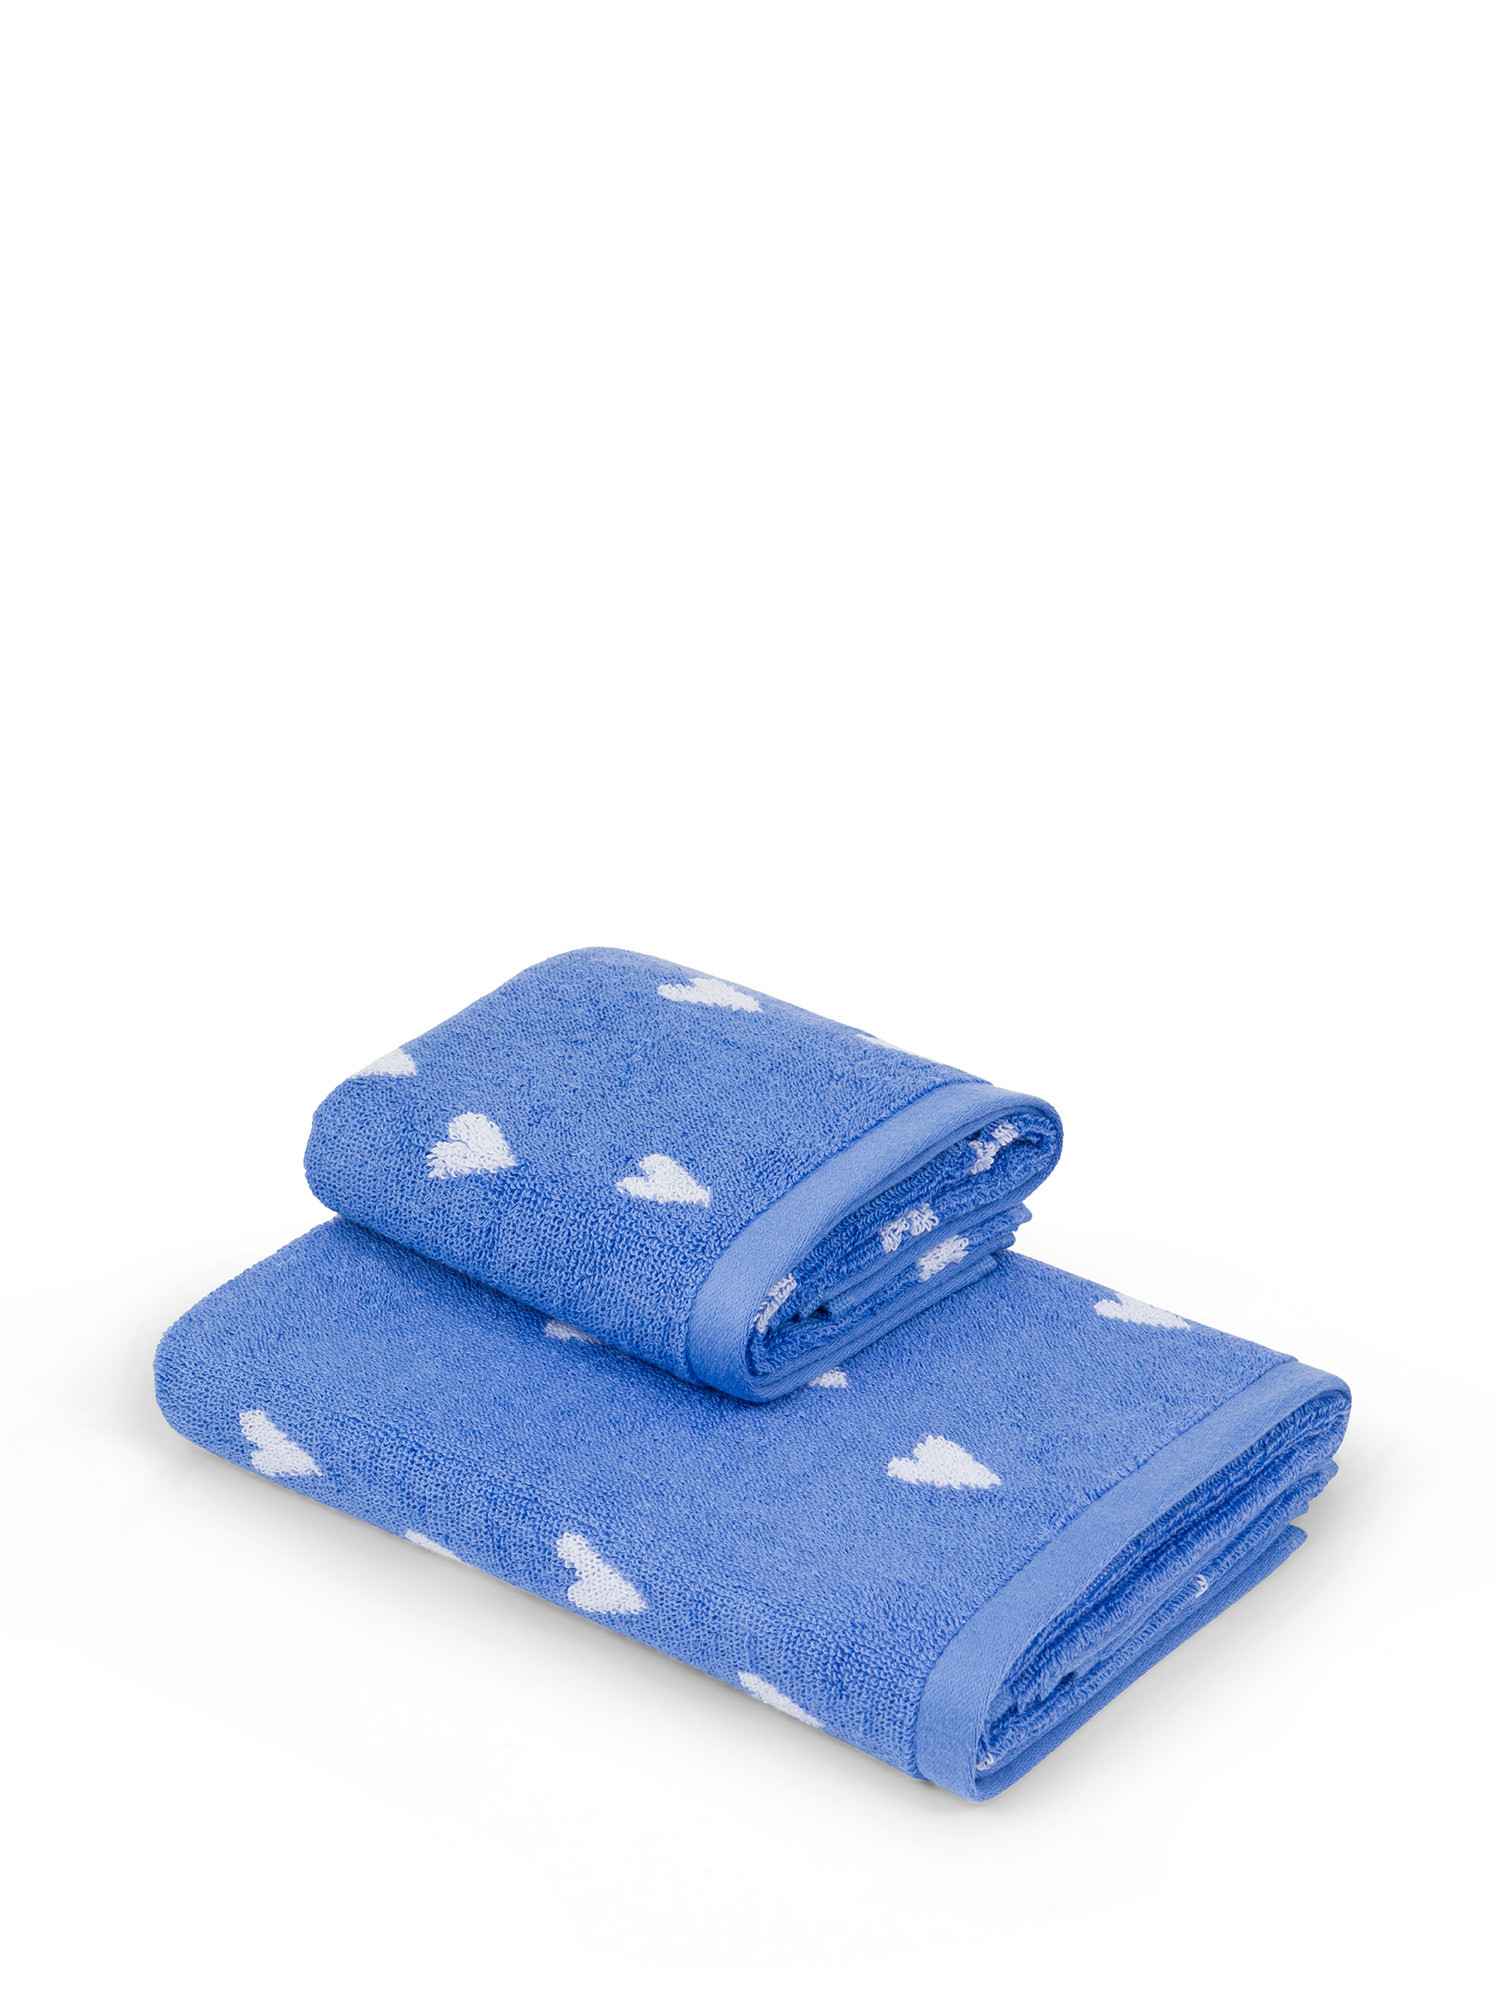 Asciugamano in spugna di cotone motivo cuoricini, Blu, large image number 0